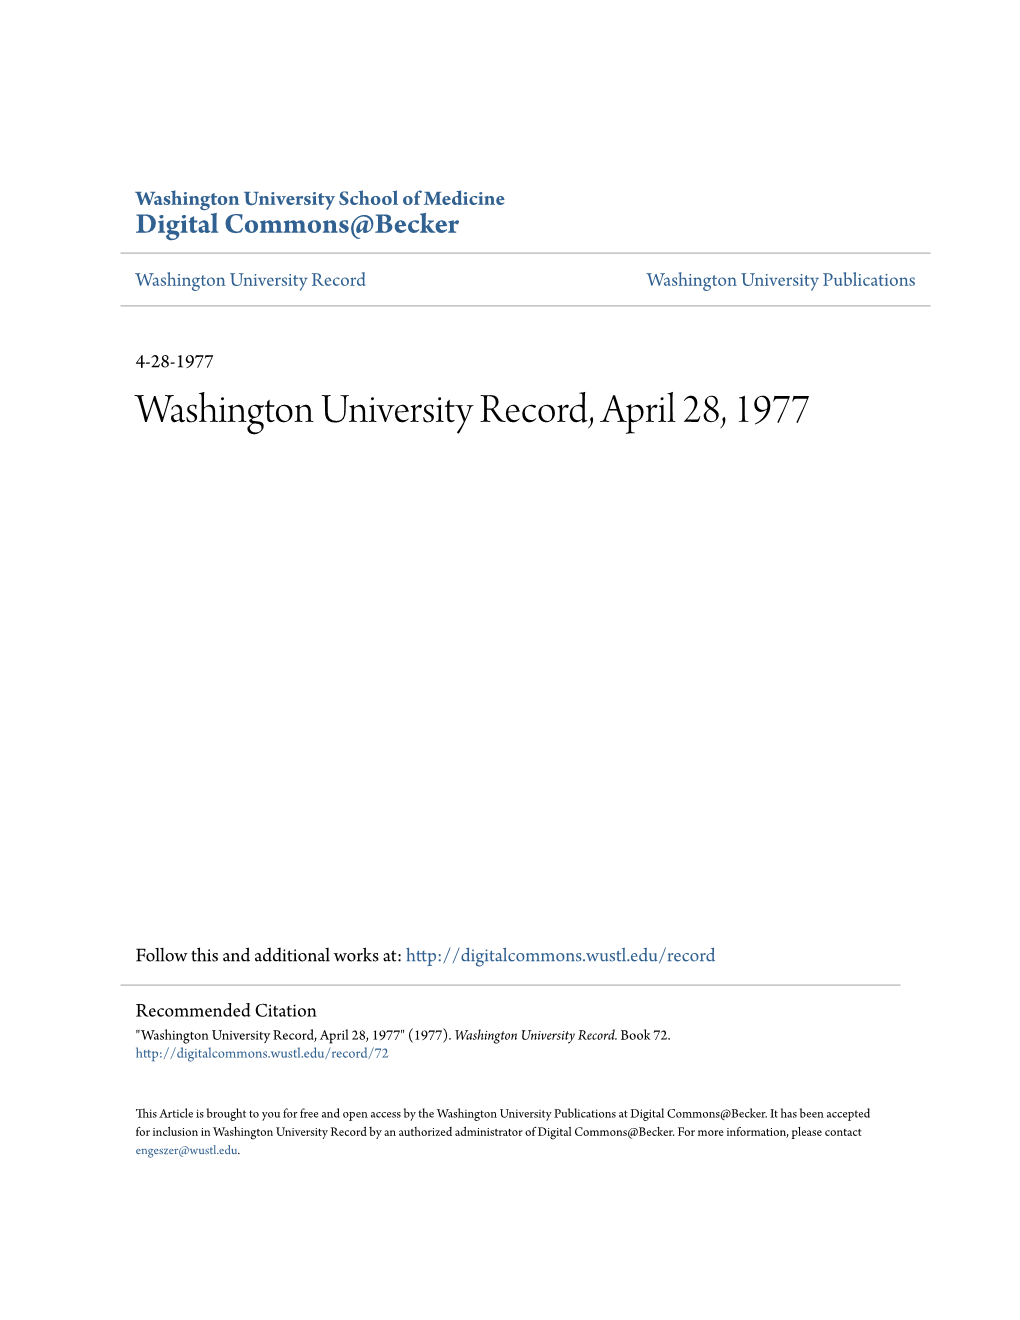 Washington University Record, April 28, 1977